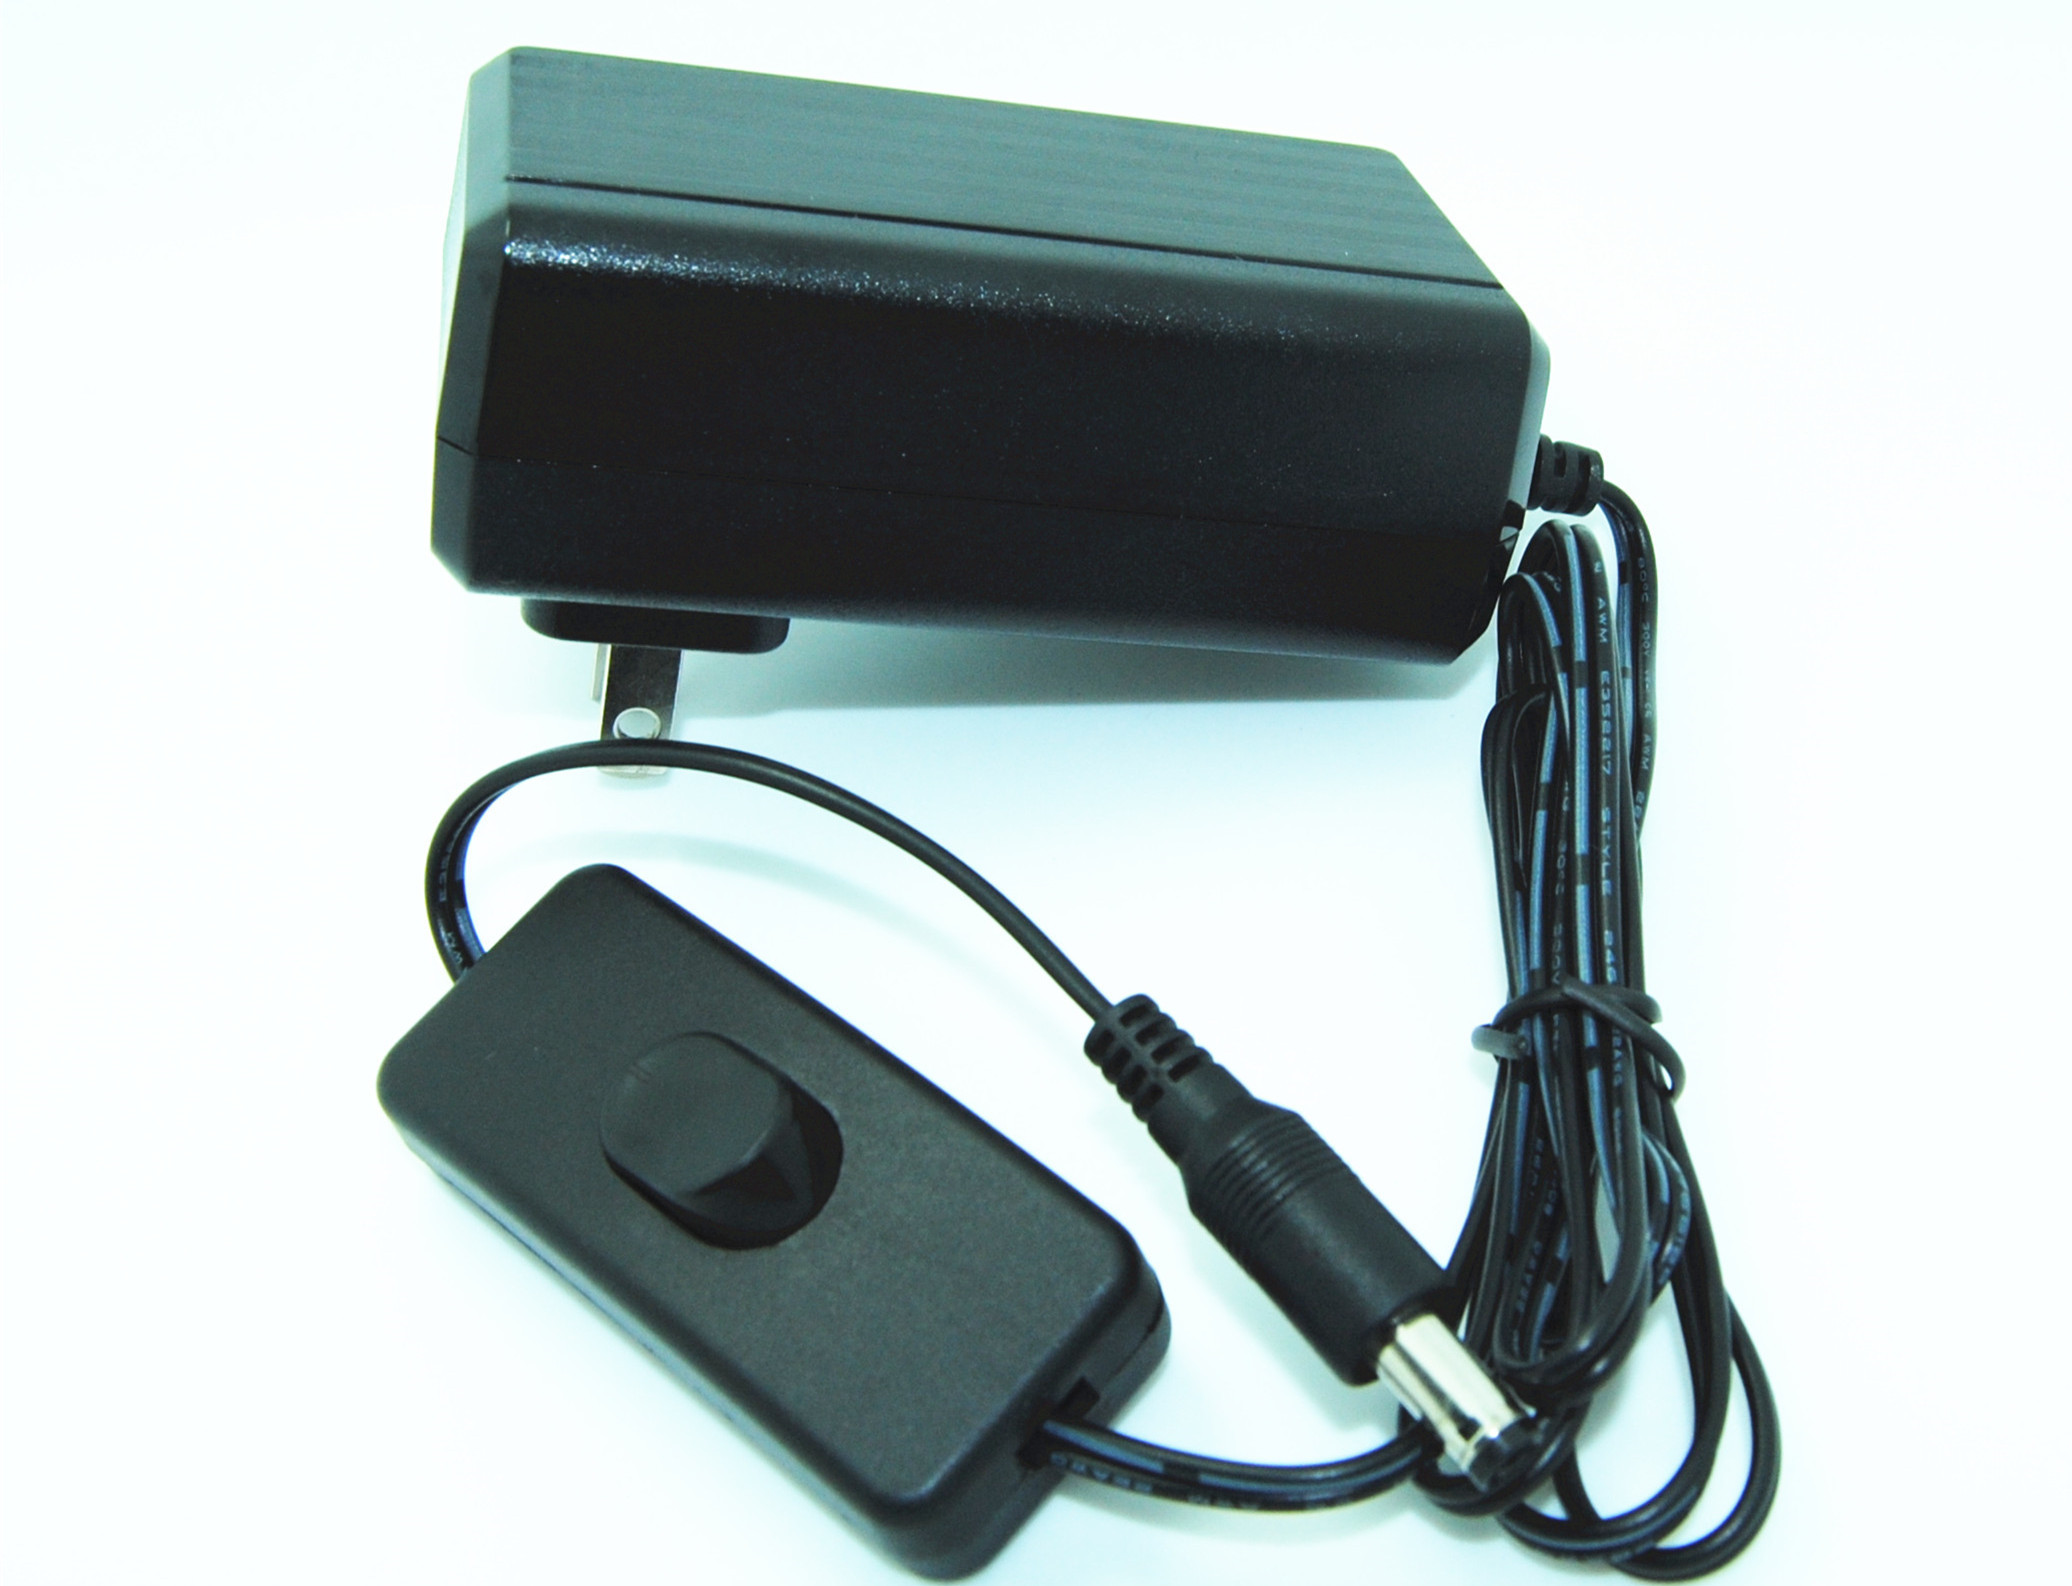 Amerika 2 pin DC Switching Power Supply Adapter untuk CCTV Kamera / Tablet PC